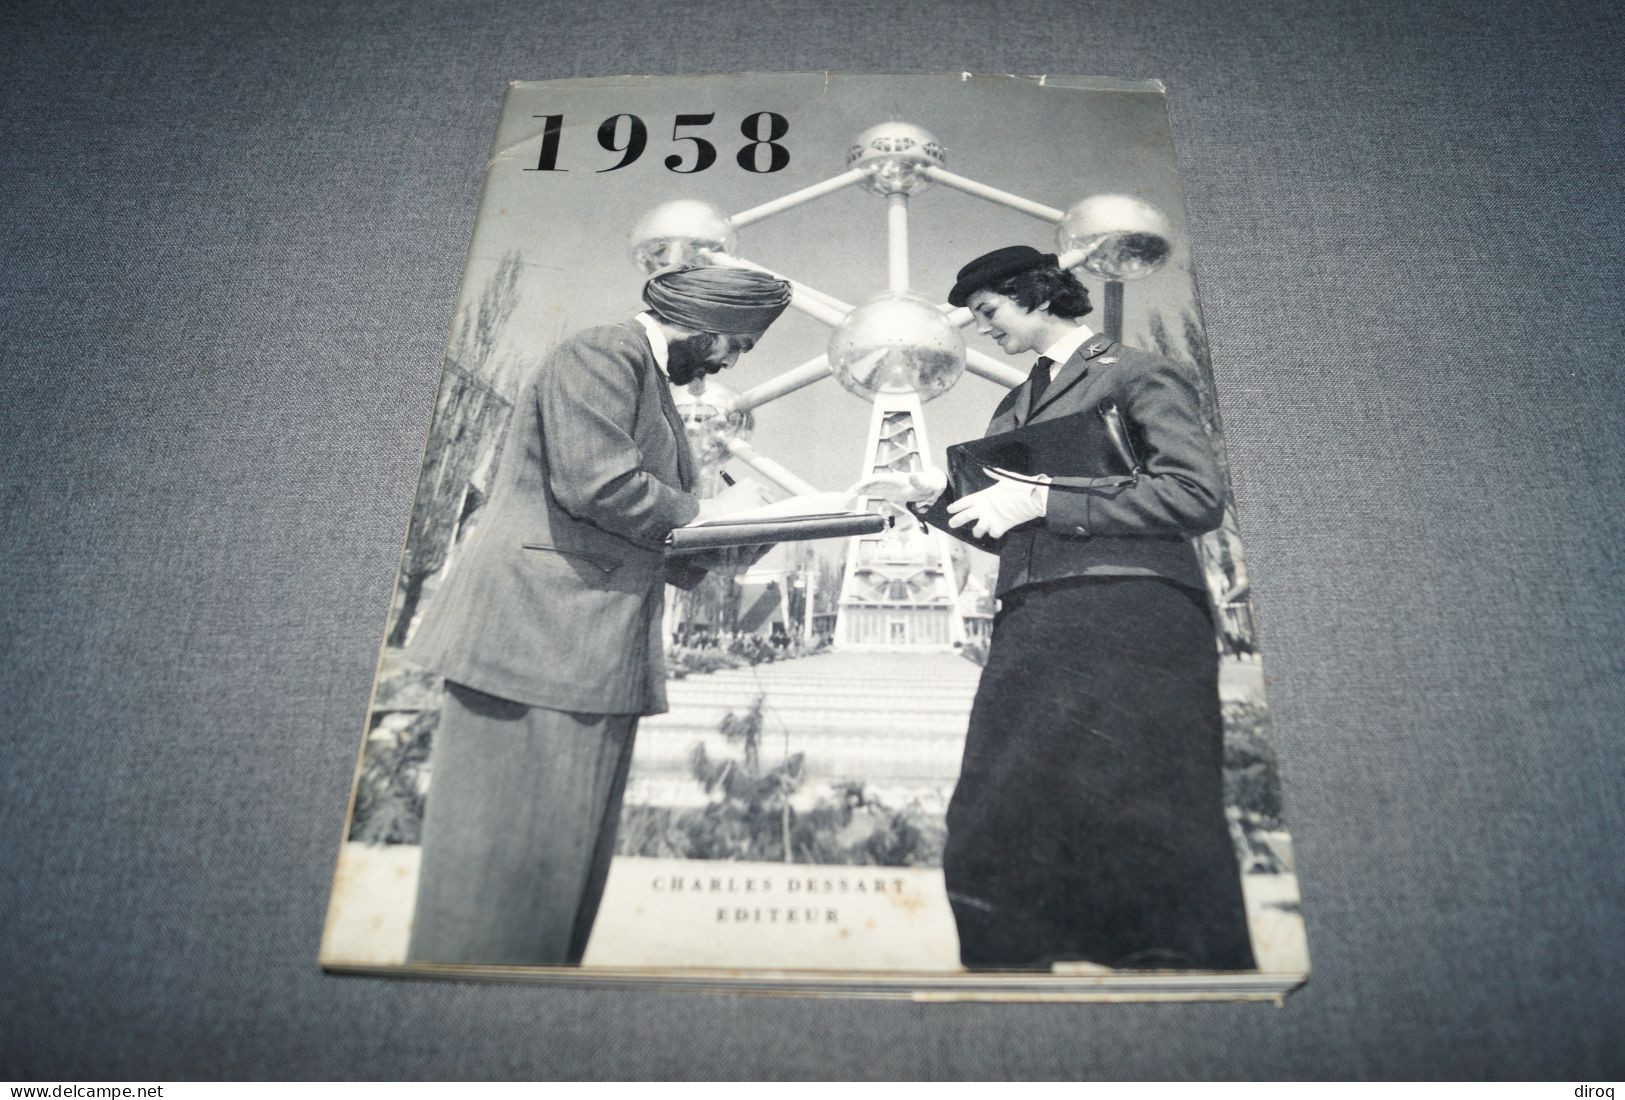 Images De L' Expo 58, Bruxelles - Edition Charles Dessart,87 Pages,27 Cm. Sur 21 Cm - Advertising